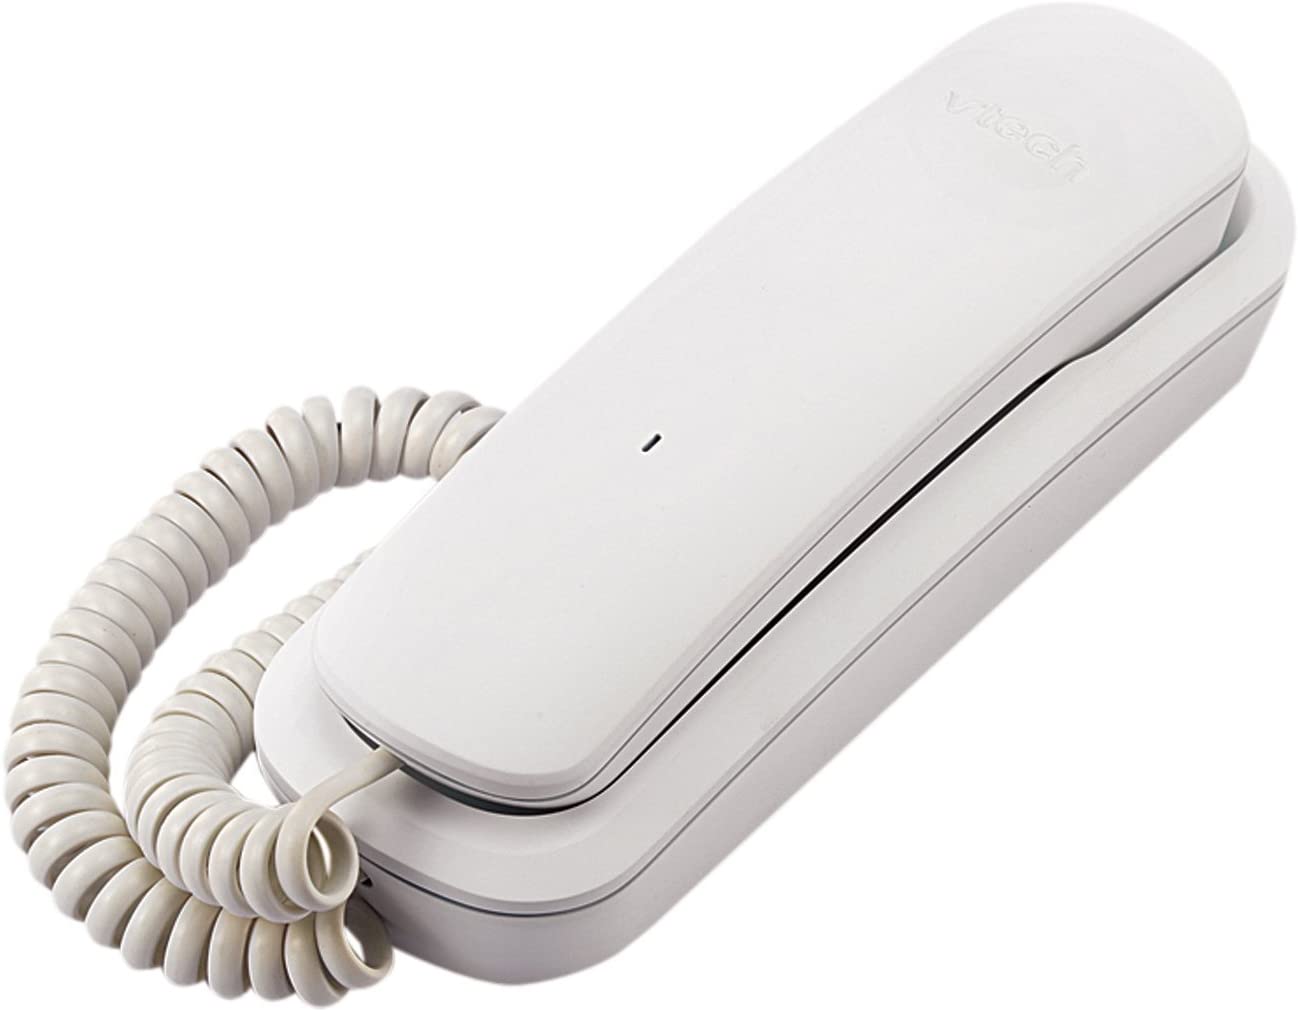 VTech CD1103W Corded Phone, White, 1 Handset